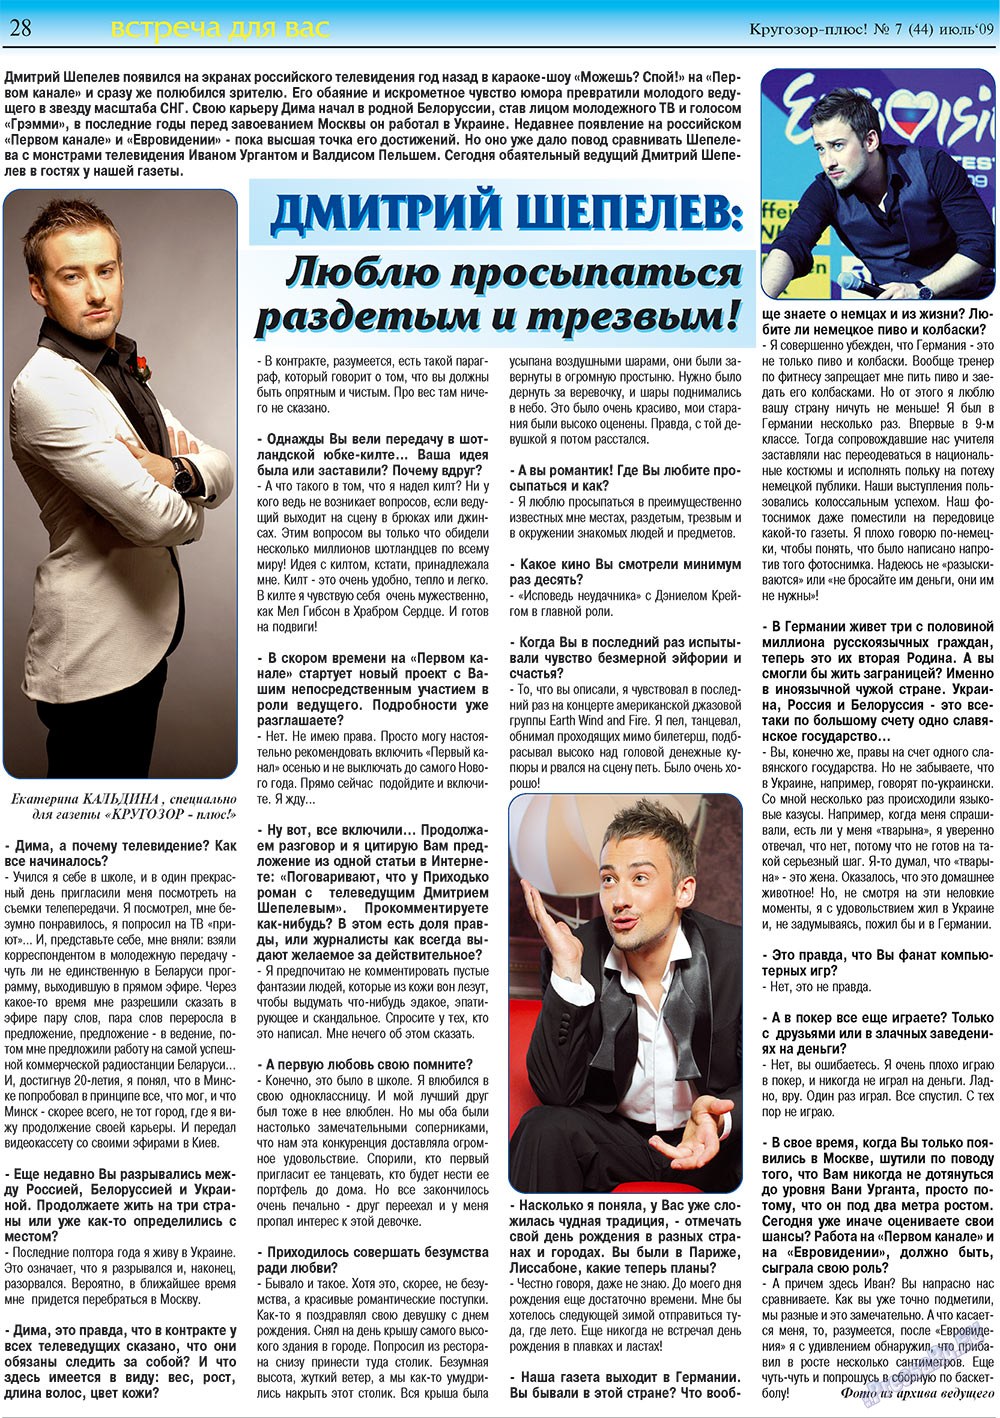 Кругозор плюс!, газета. 2009 №7 стр.28